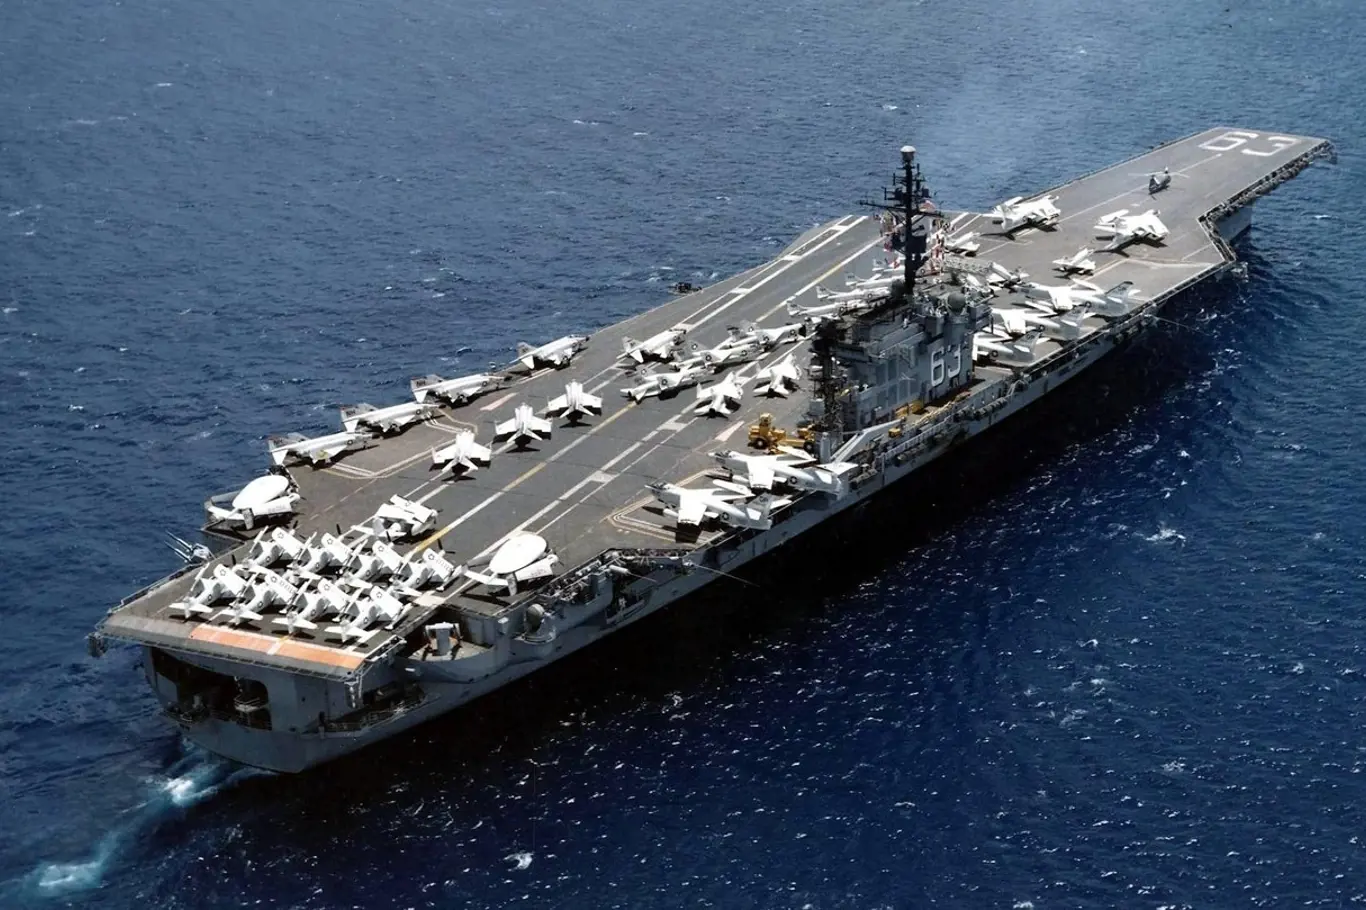 Americká letadlová loď USS Kitty Hawk